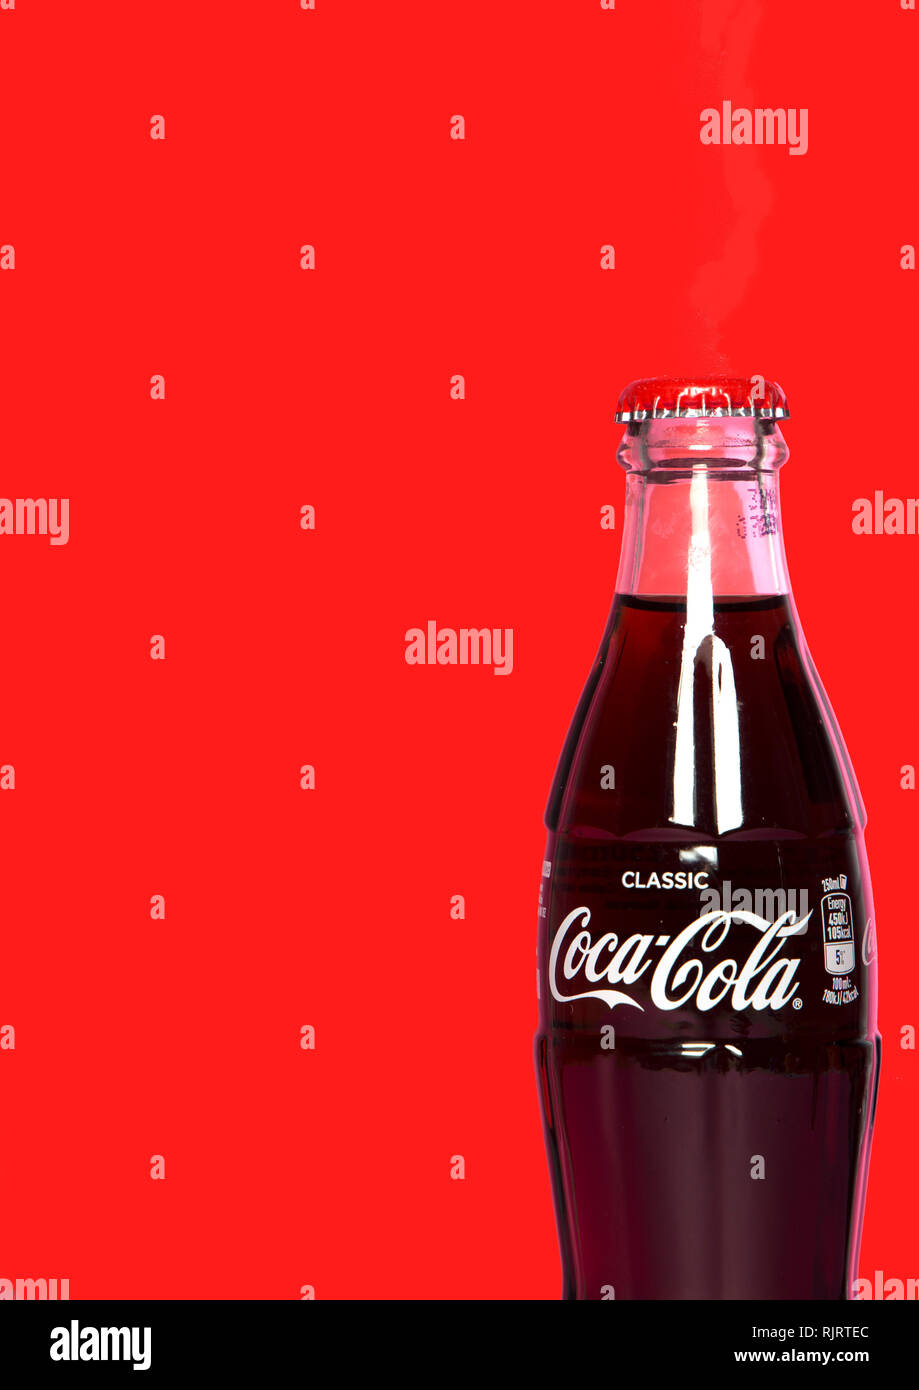 Coca-Cola - Studio Image Stock Photo